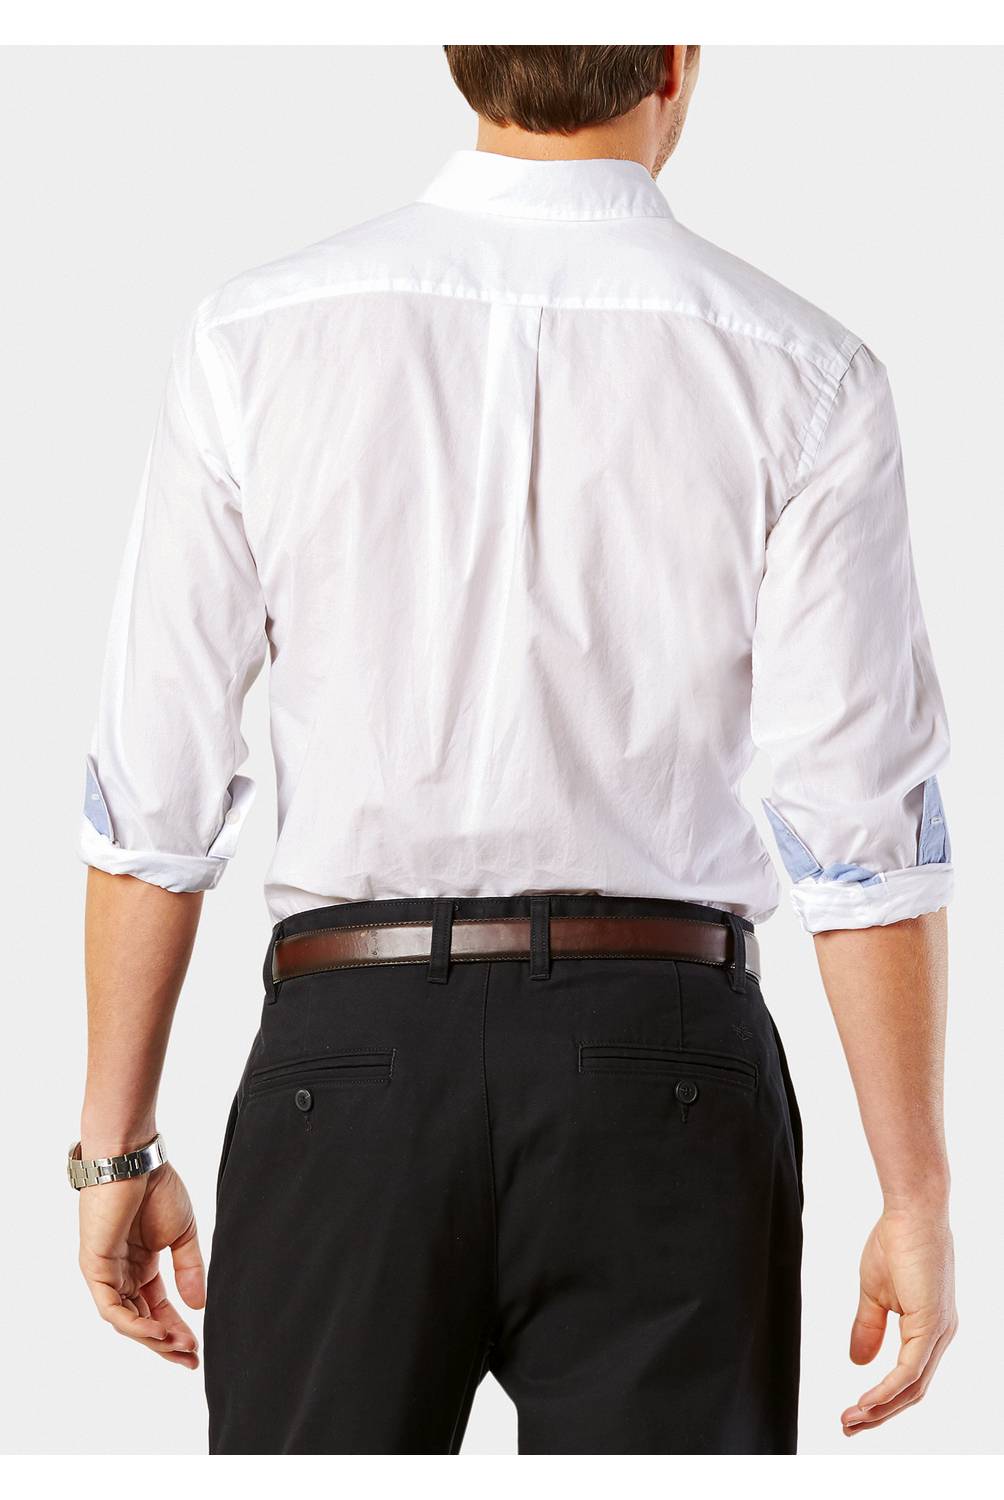 DOCKERS - Camisa Formal Essential ML Blanco 